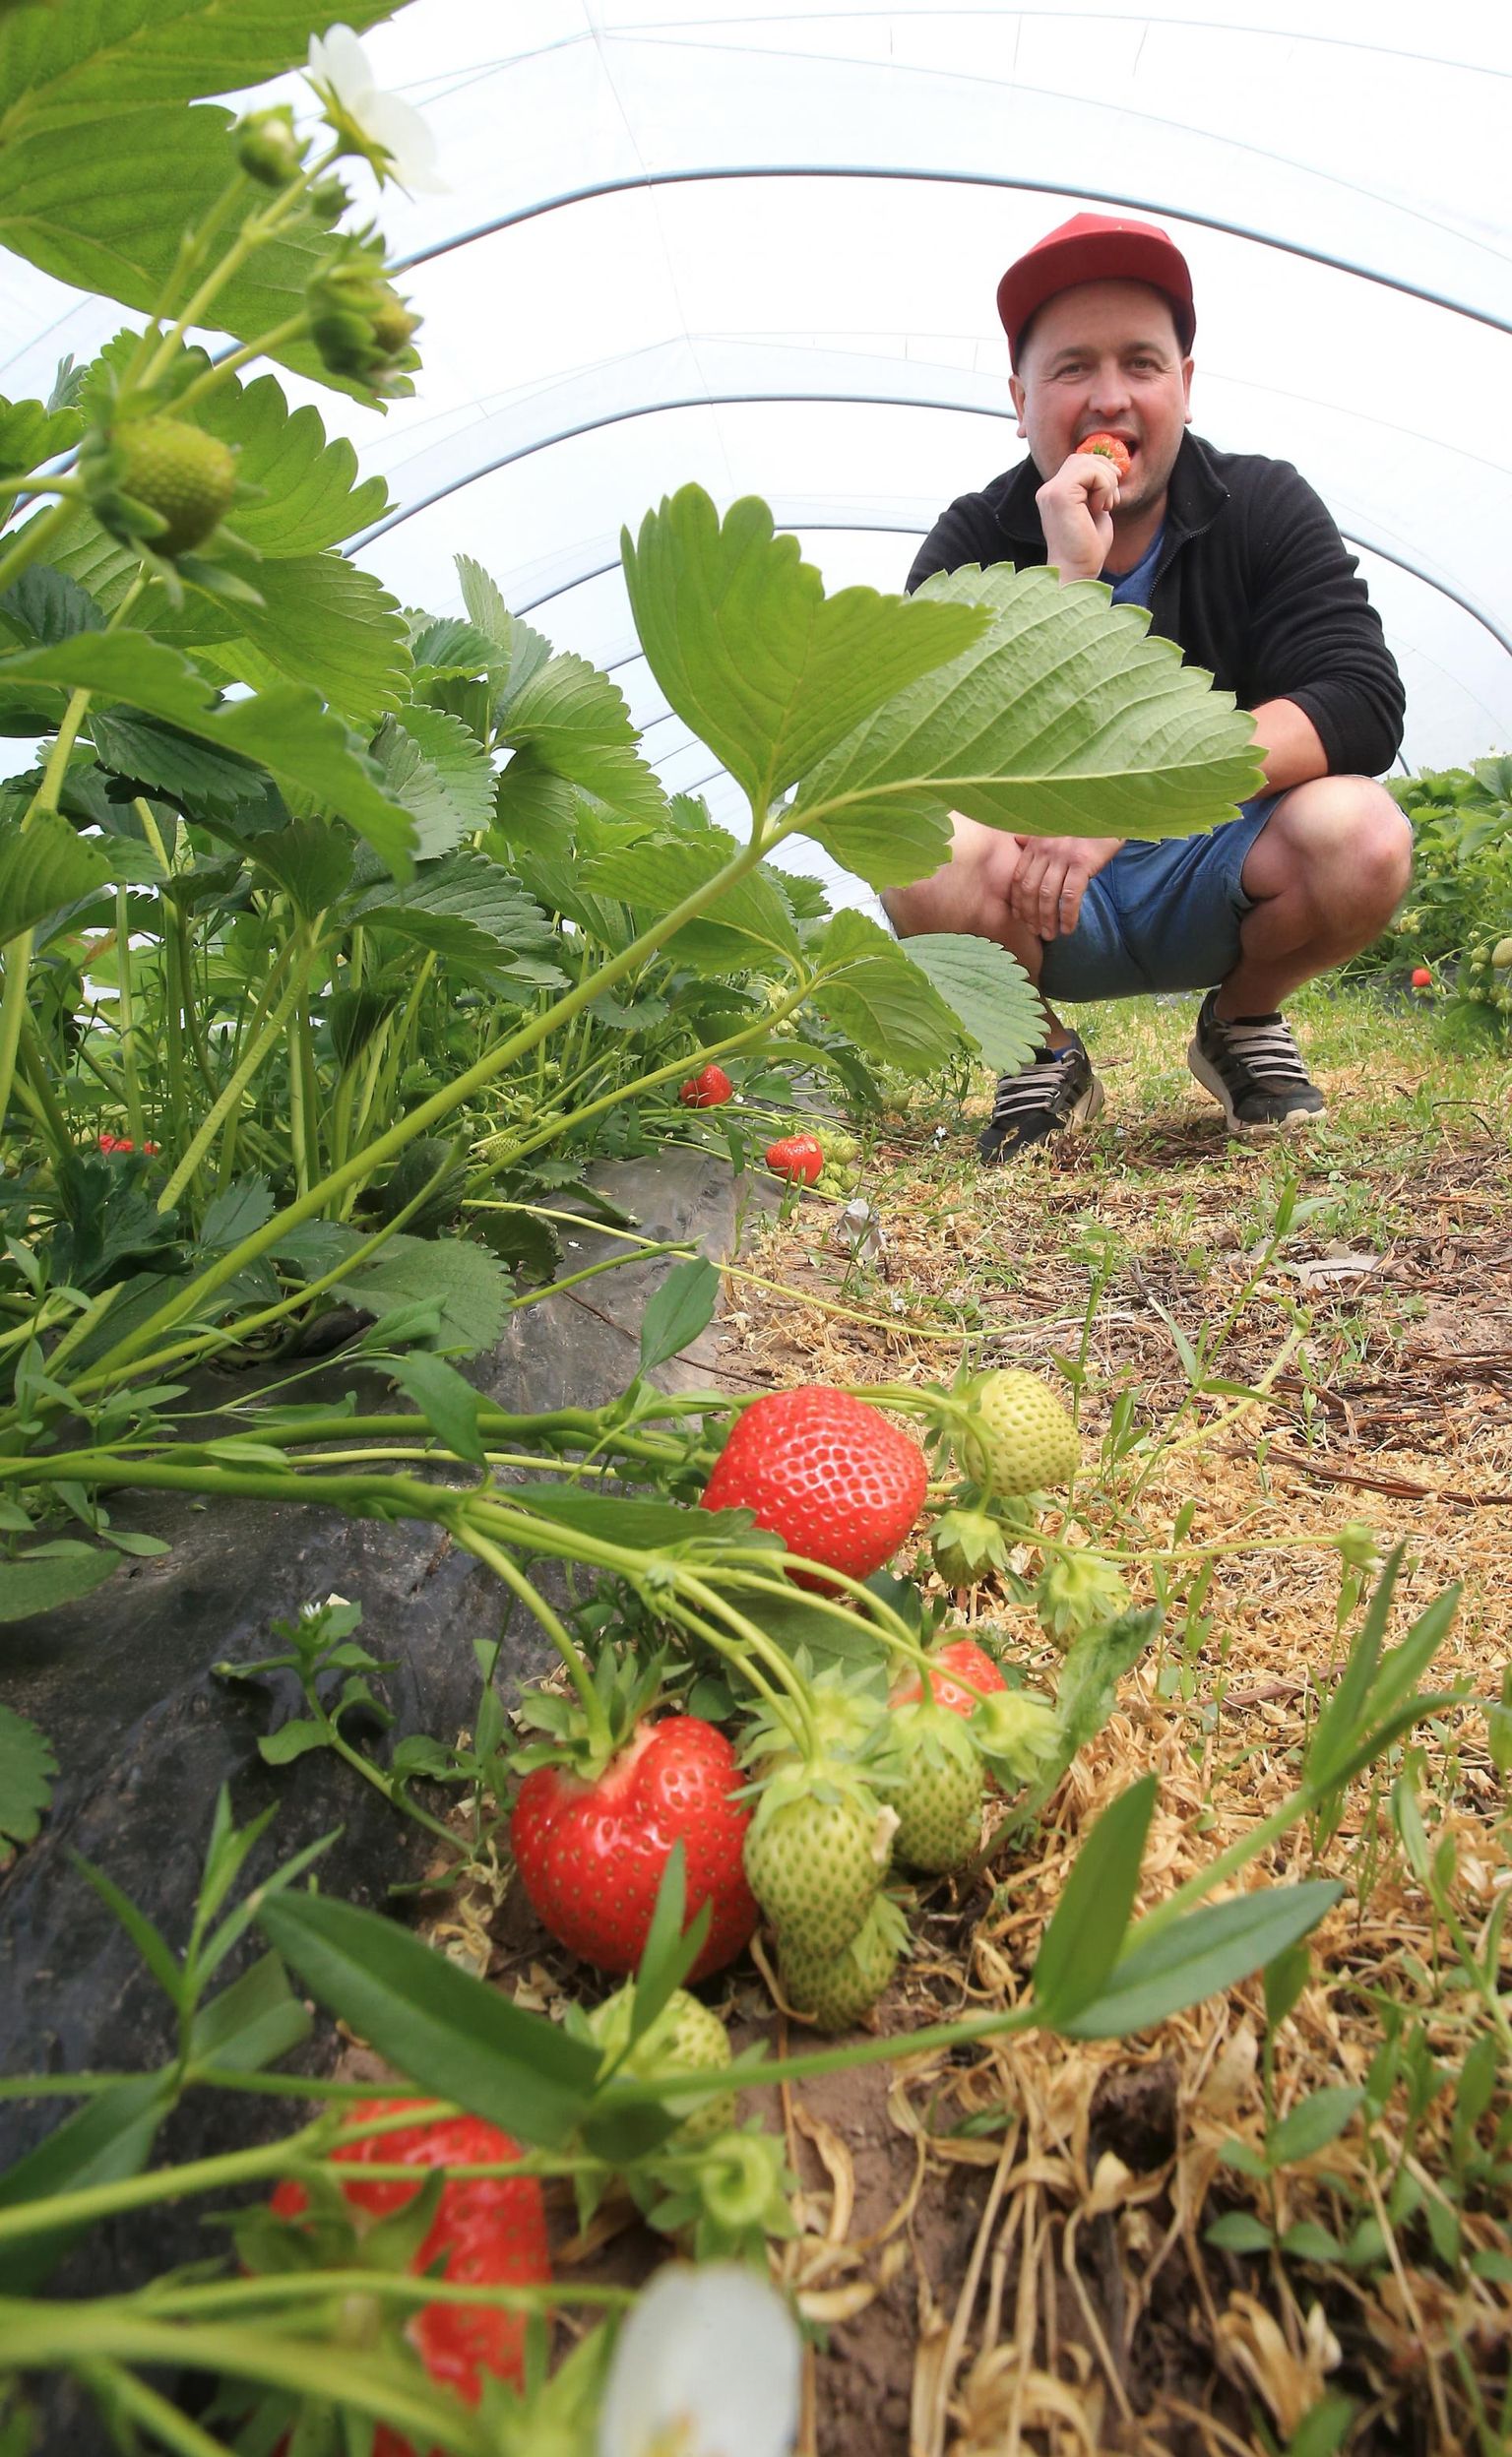 Maasikakasvataja Paavo Otsuse sõnul pole alust kartusel, et maasikaid korjama tulnud ukrainlased tahavadki siia jääda. „Nad tulevad siia eesmärgiga teenida raha ja minna koju tagasi,” kinnitas ta.